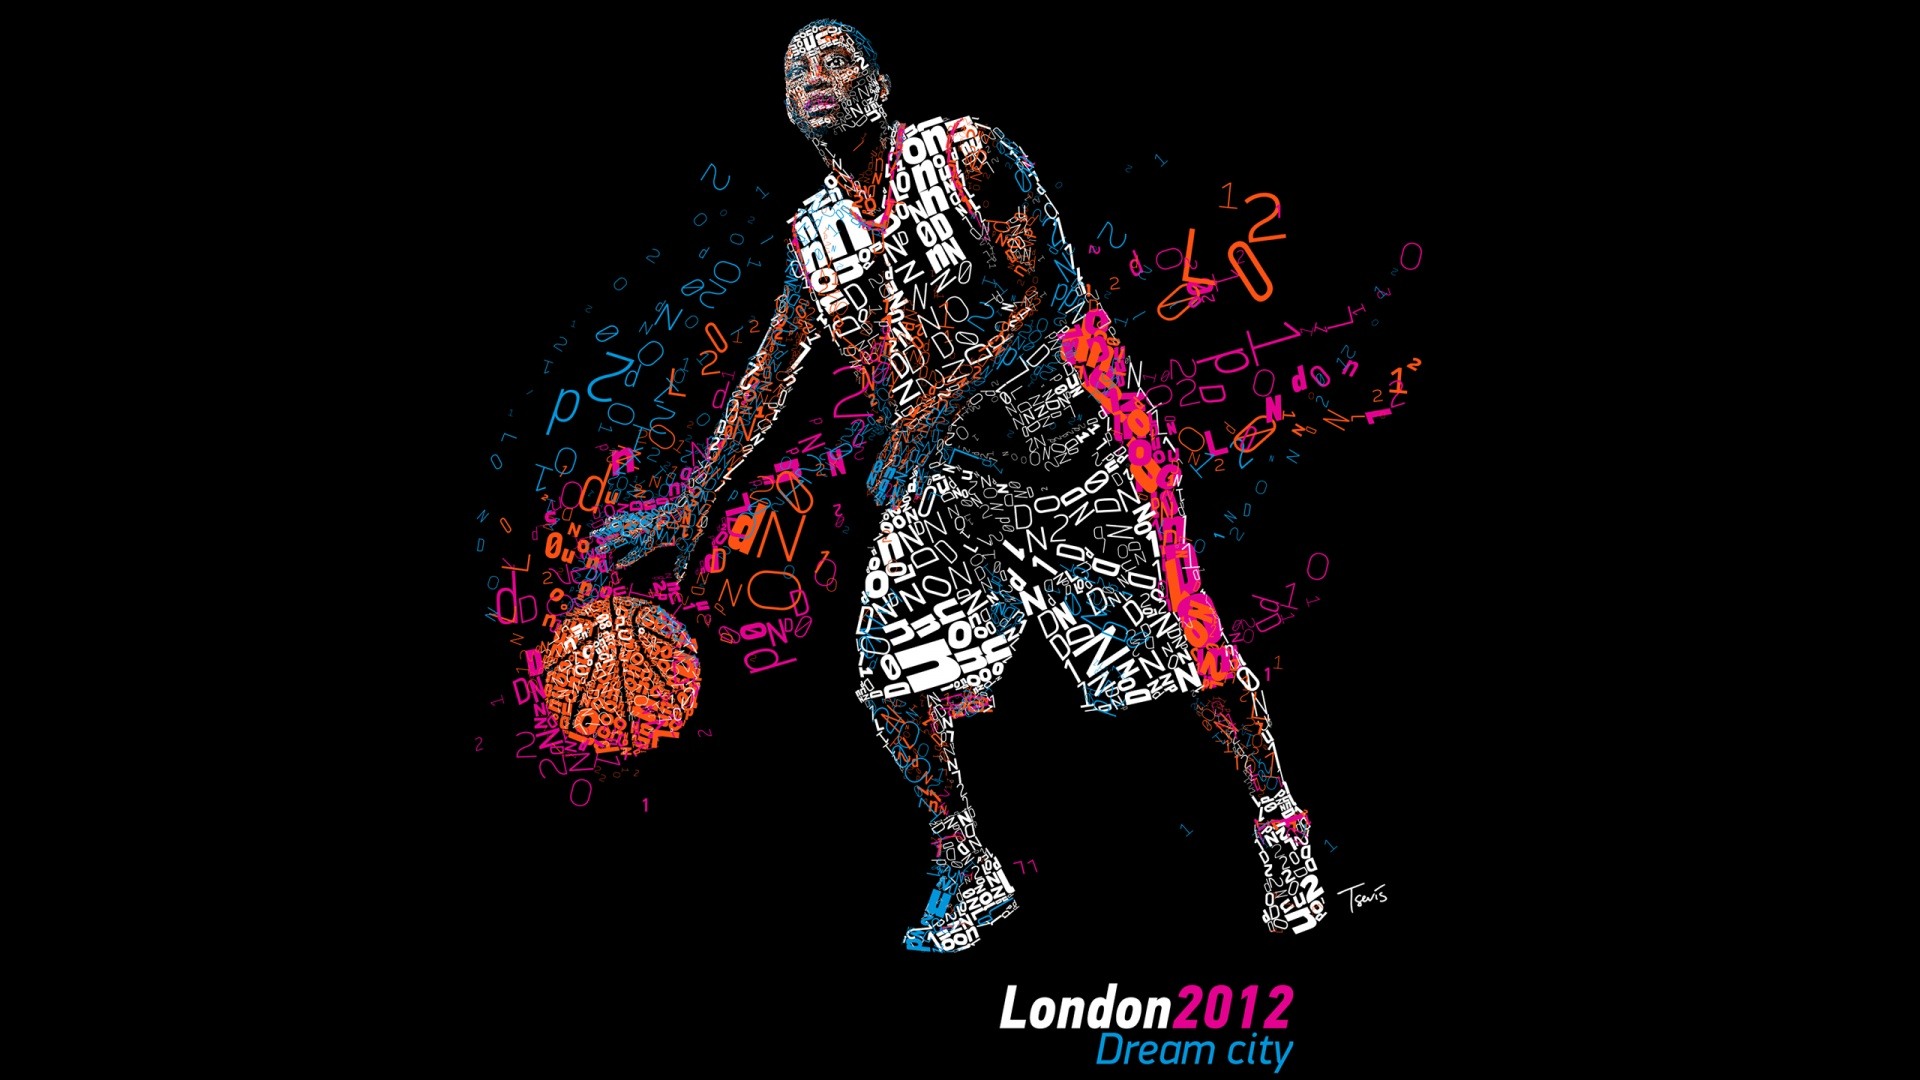 Londres 2012 Olimpiadas fondos temáticos (1) #11 - 1920x1080